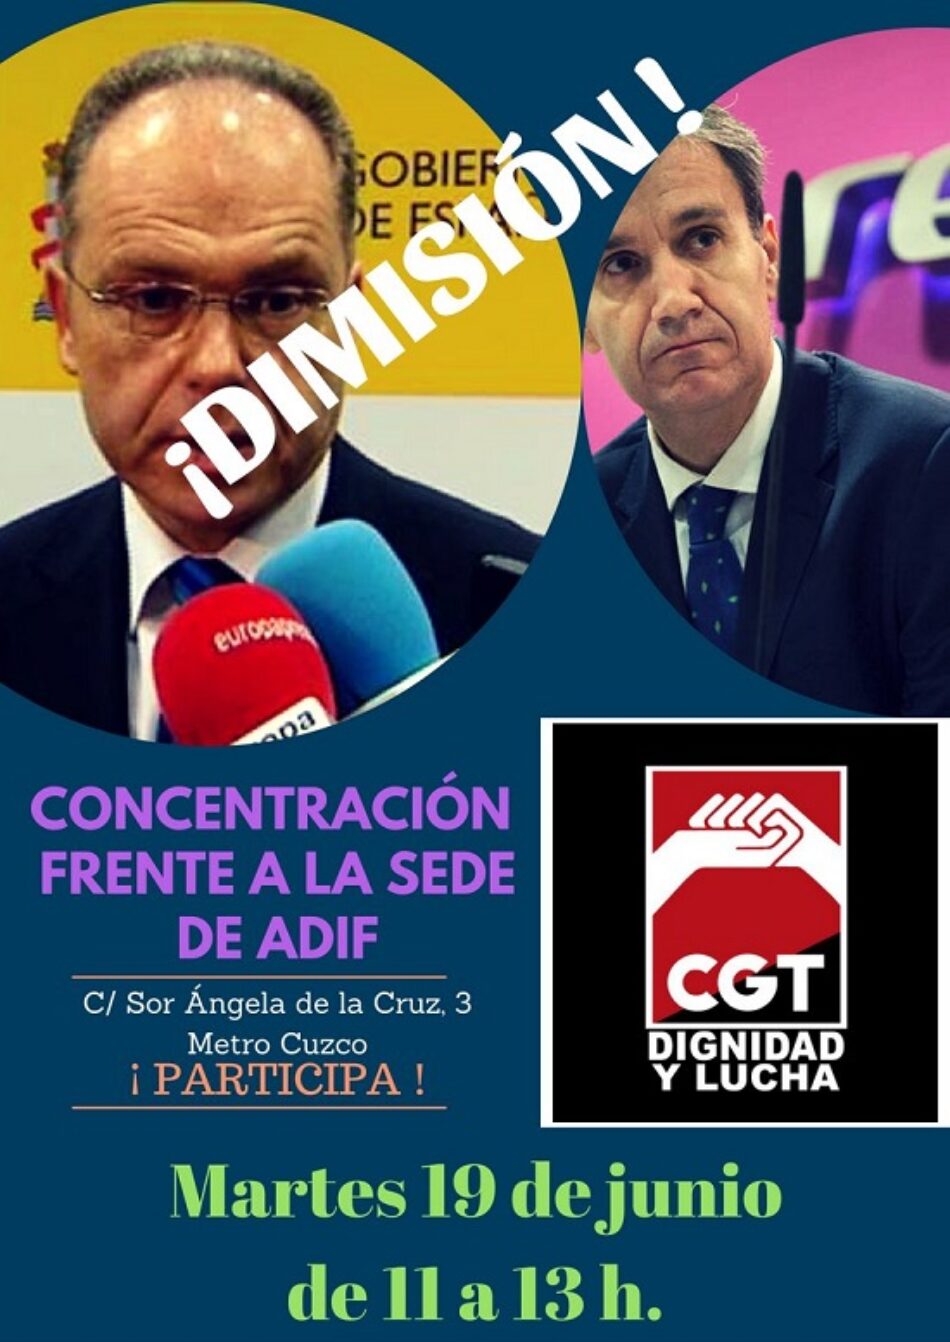 CGT pide la dimisión de los presidentes de ADIF y RENFE